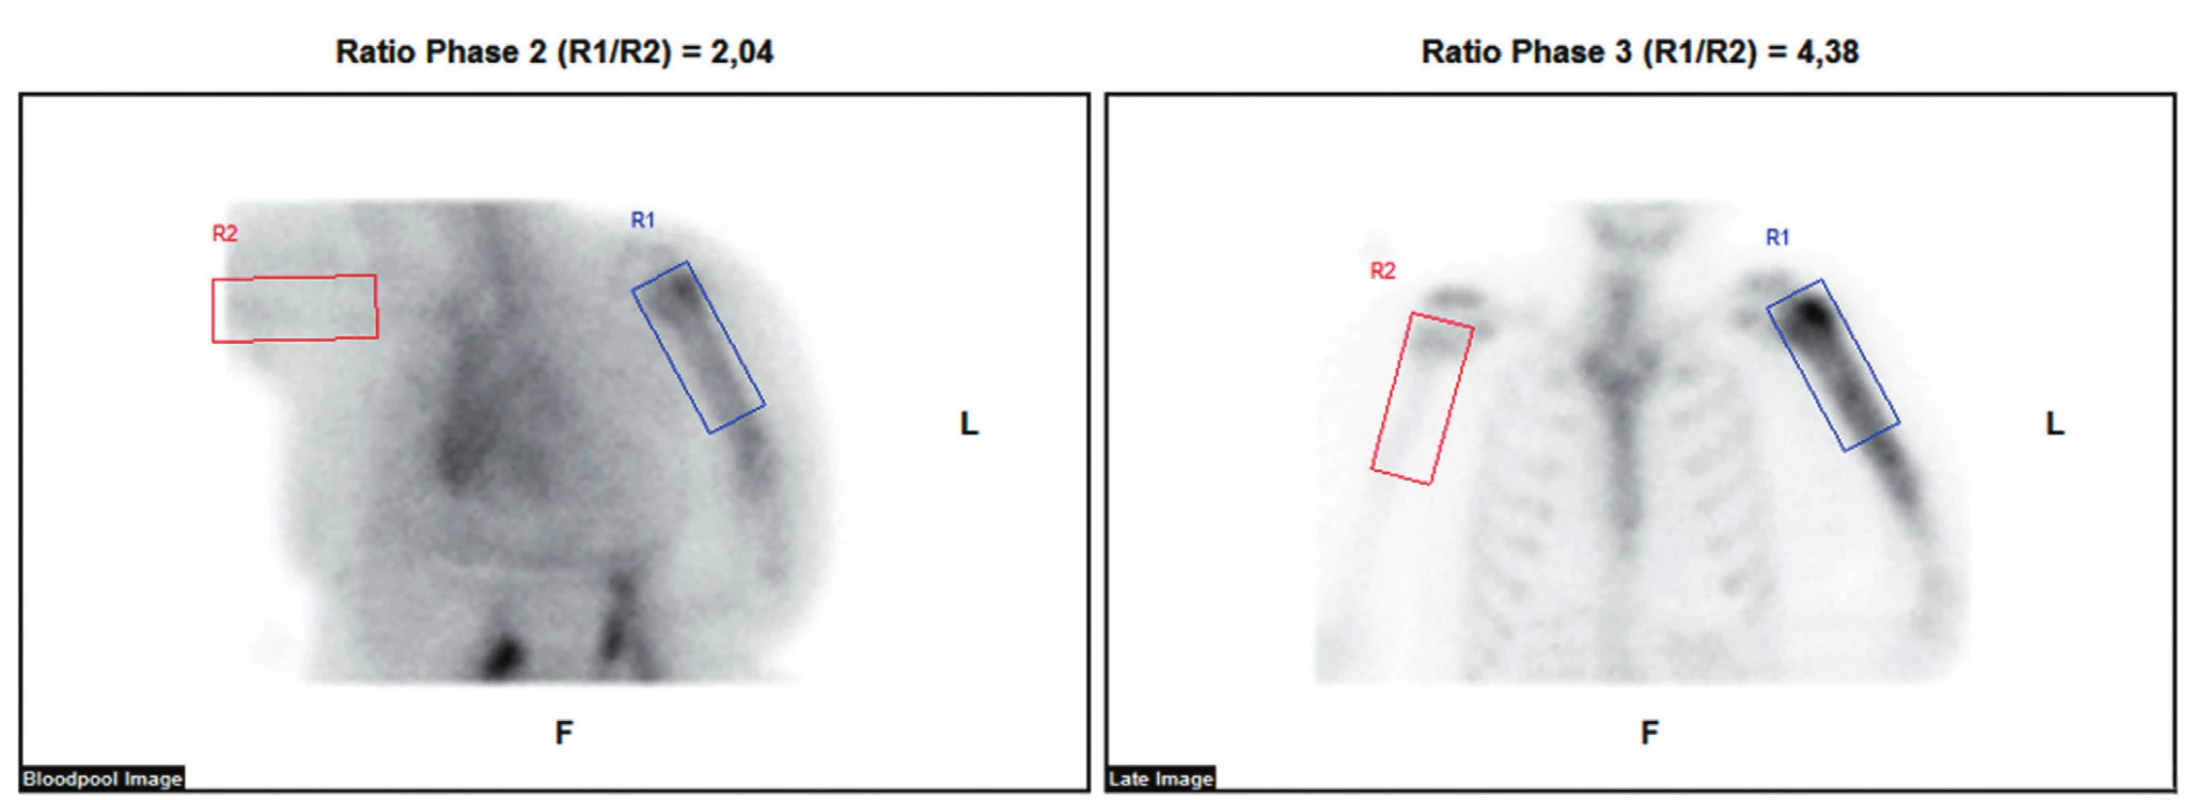 Provedená třífázová scintigrafie skeletu ukazuje ve fázi blood poolu nasnímané 5 minut po aplikaci radiofarmaka zvýšené tkáňové
prokrvení v oblasti diafýzy levé pažní kosti. Ve třetí fázi nasnímané za 2 h po aplikaci radiofarmaka je aktivita akumulována zvýšeně v proximálních
2/3 diafýzy s maximem v hlavici laterálně.